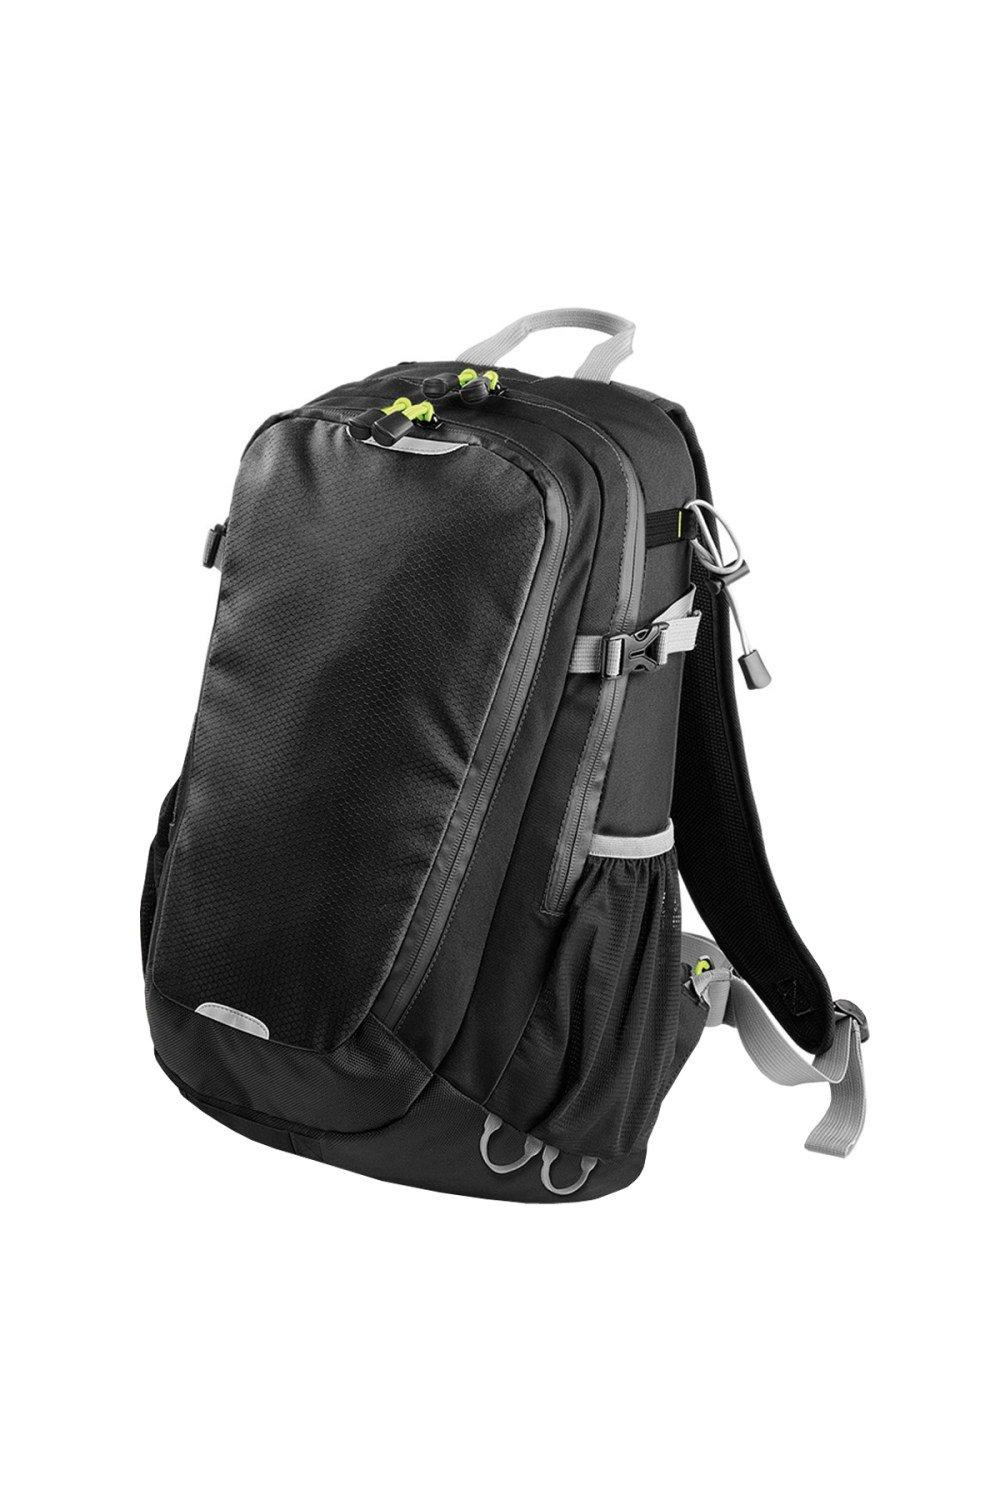 Рюкзак Apex Daypack объемом 20 литров (20 л, ноутбук с диагональю до 15,6 дюйма) Quadra, черный чехол mypads мопс для doogee v20 задняя панель накладка бампер